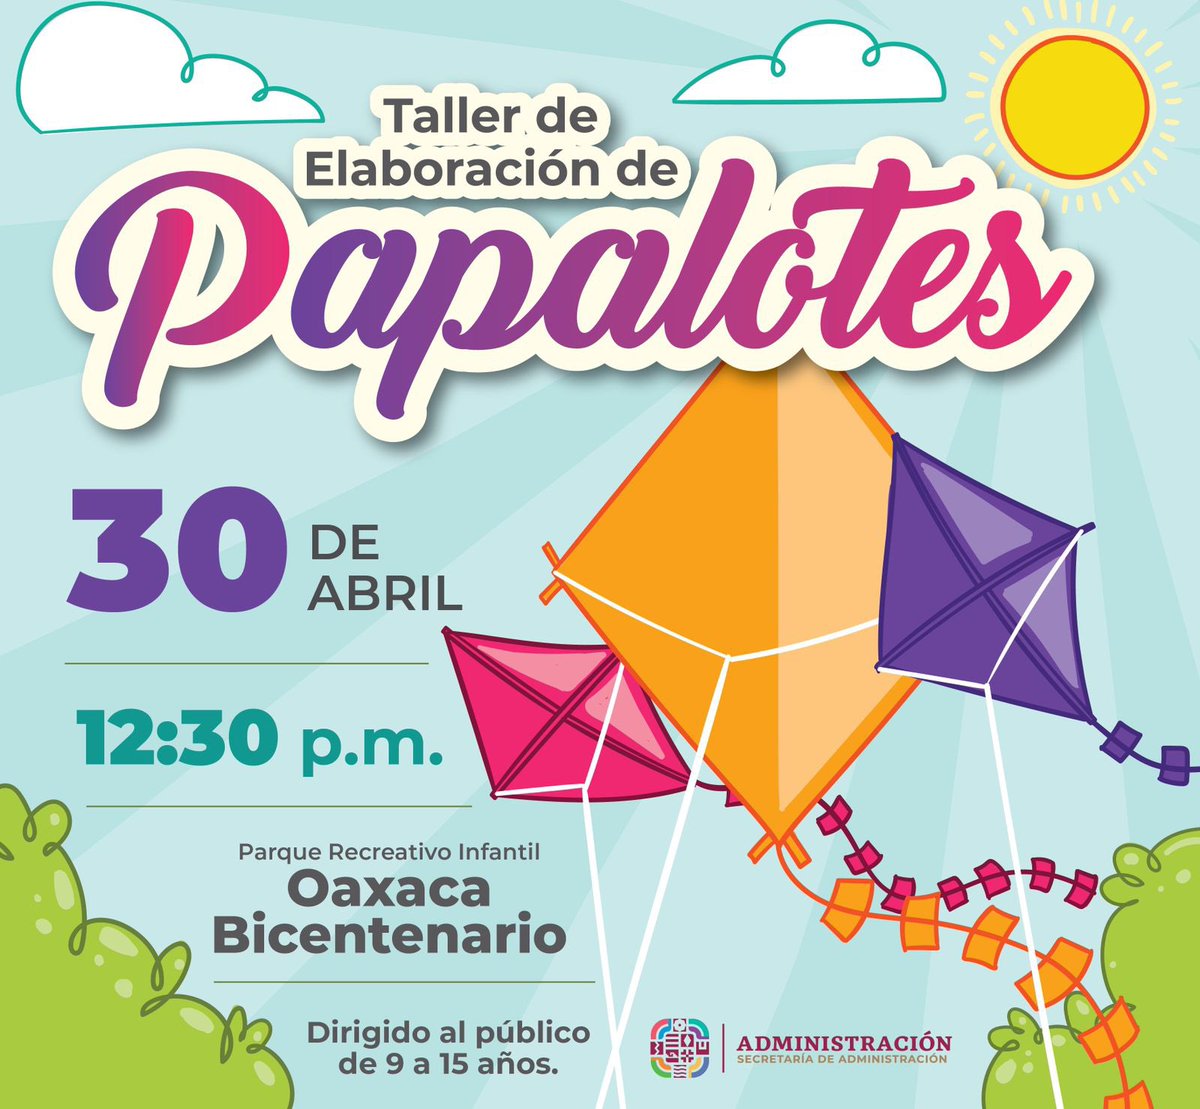 La Secretaría de @Admon_GobOax invita a la niñez y adolescencia a asistir al Taller de Elaboración de Papalotes, que llevará a cabo el 30 de abril en el Parque Recreativo Infantil Oaxaca Bicentenario. La cita es a las 12:30 de la tarde. ¡No faltes!